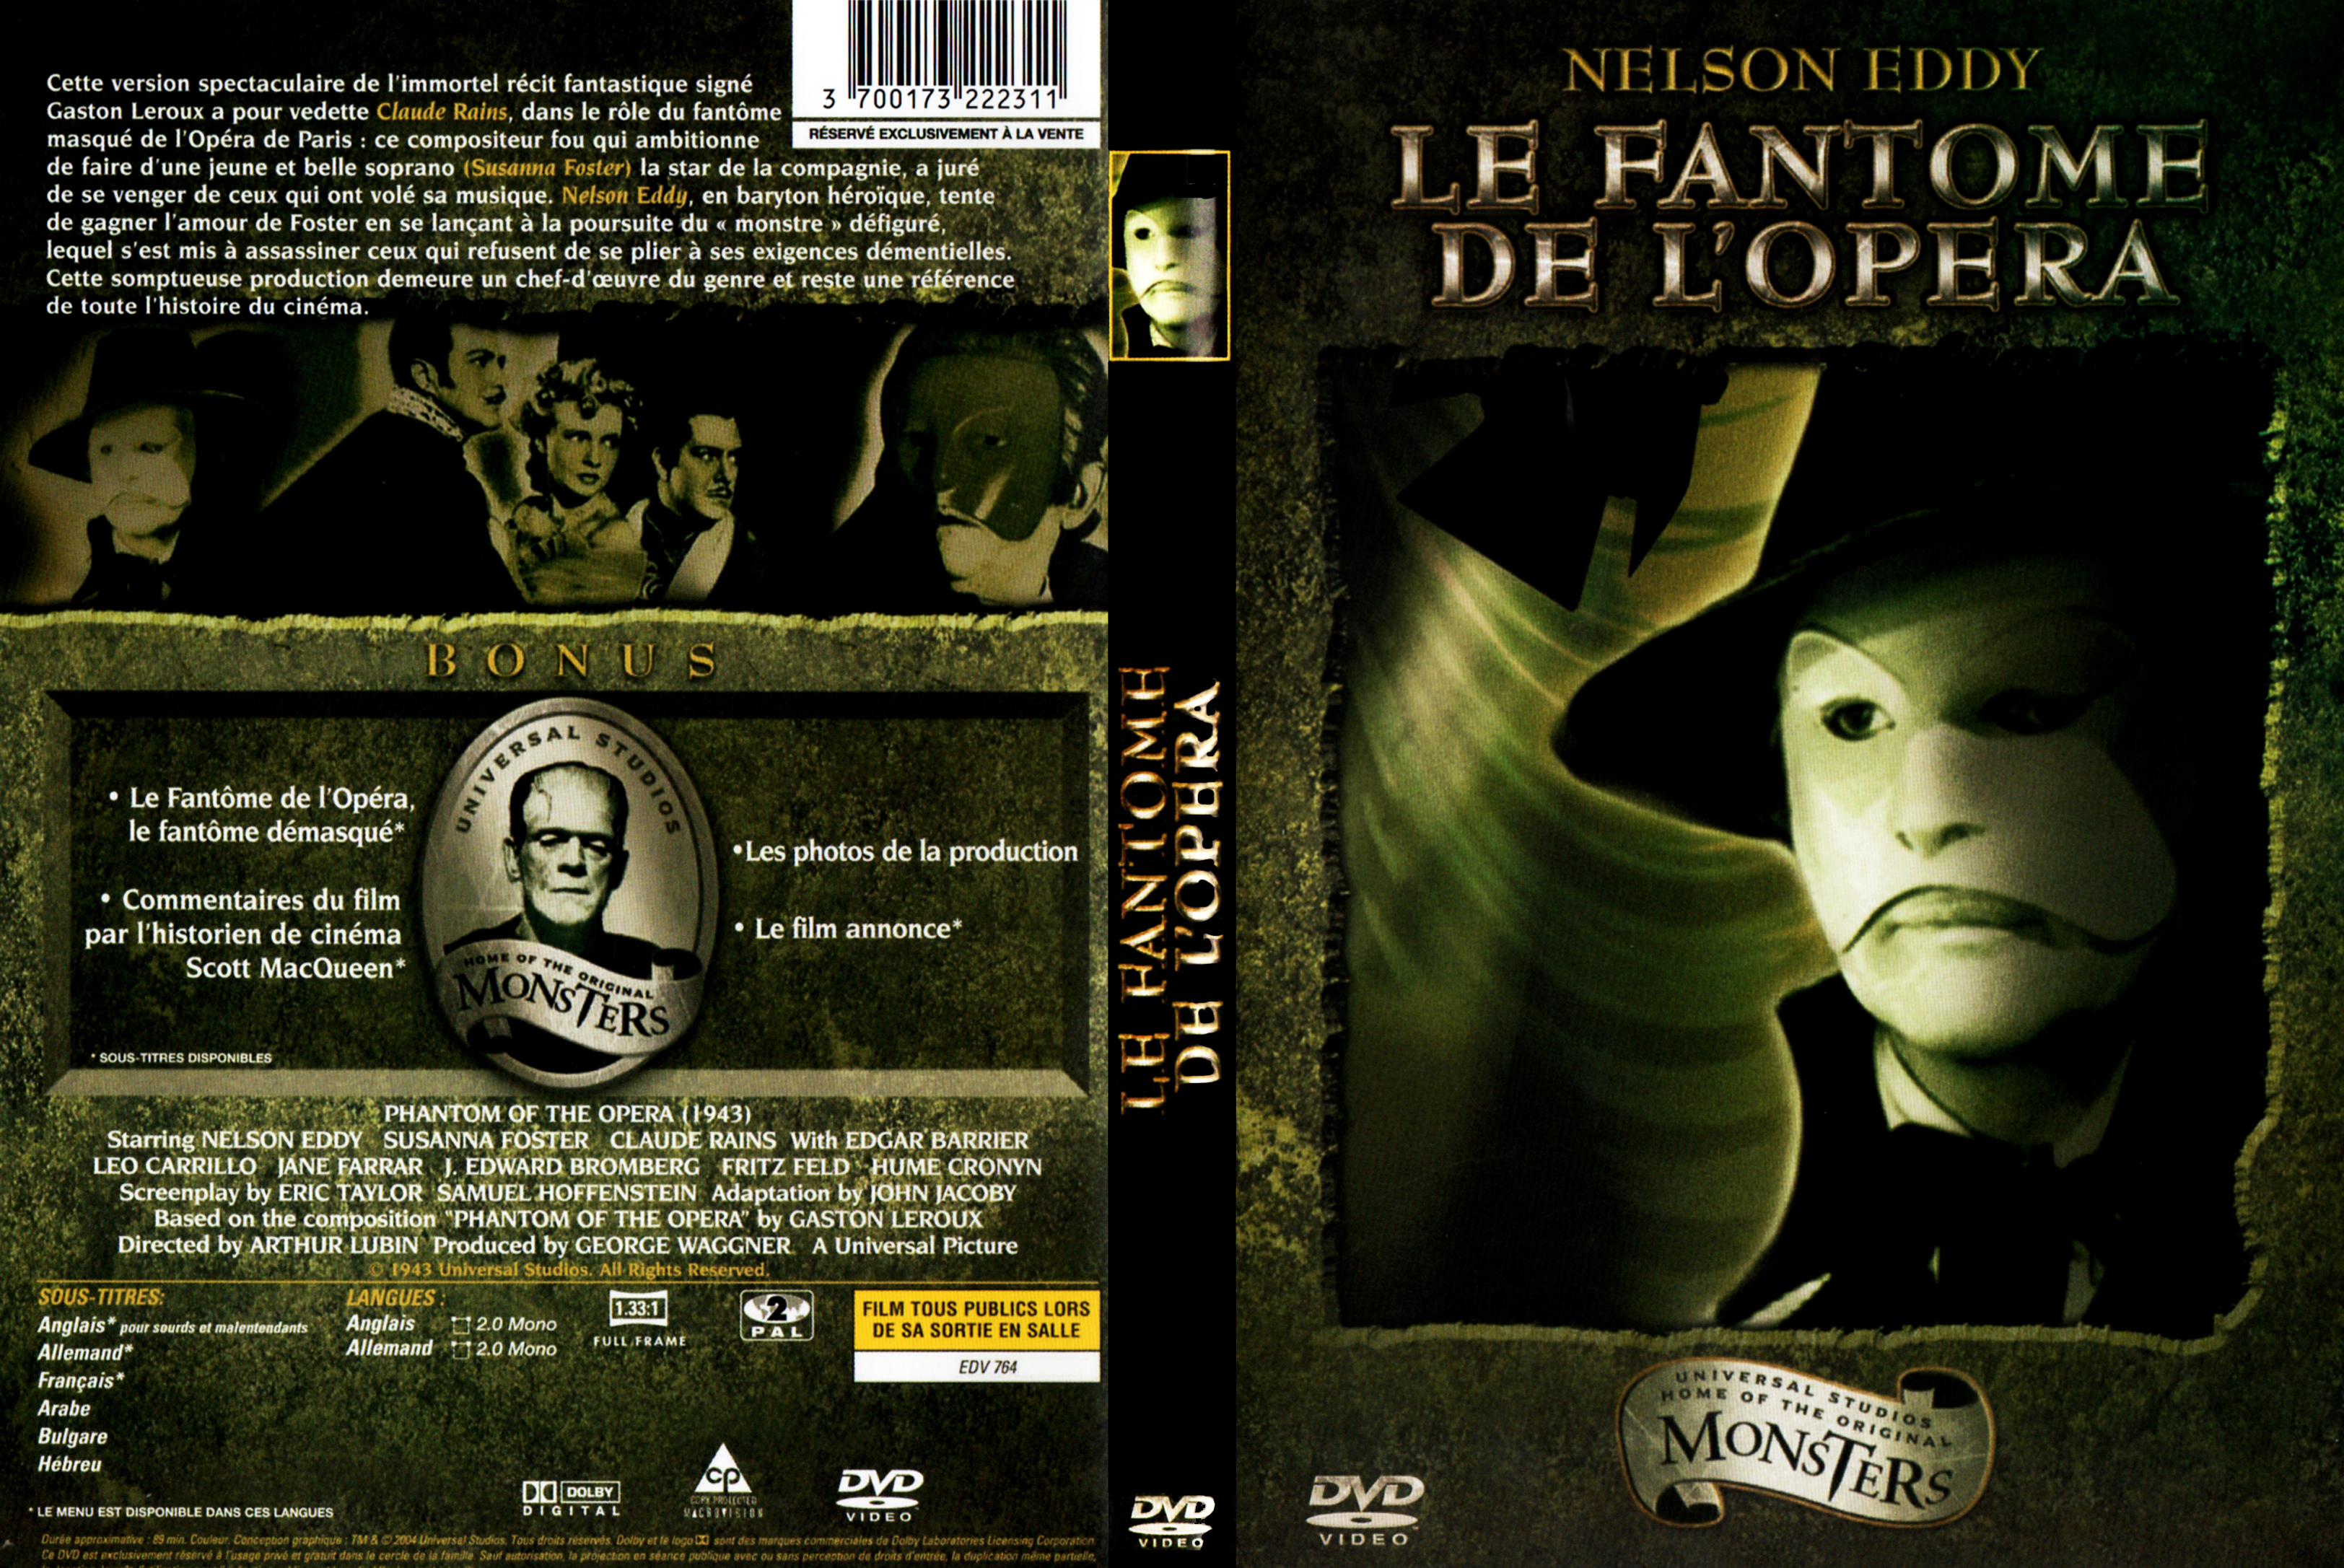 Jaquette DVD Le fantome de l